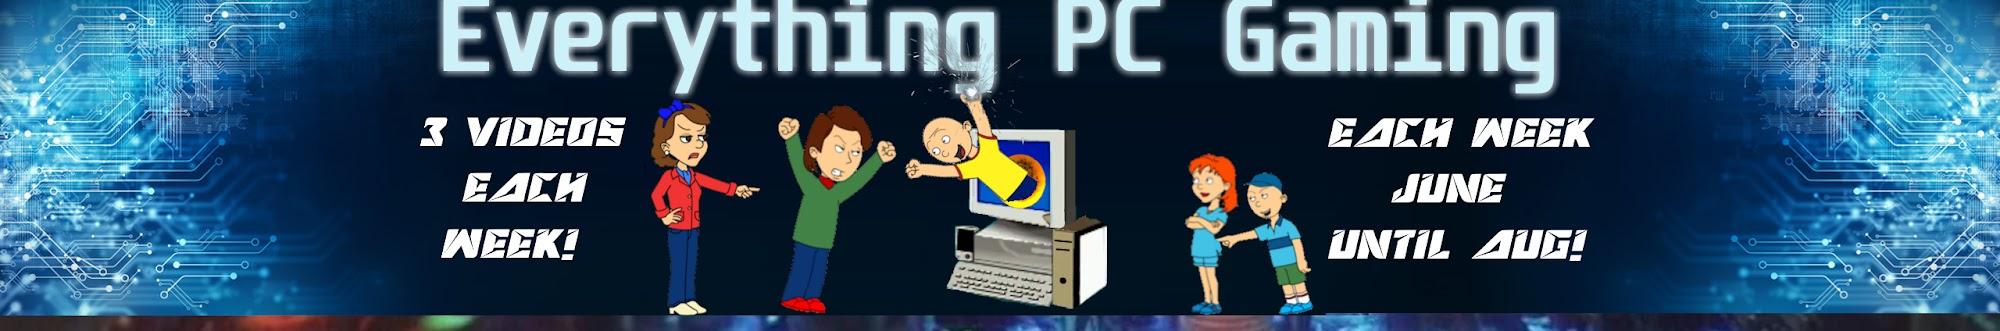 Everything PC Gaming